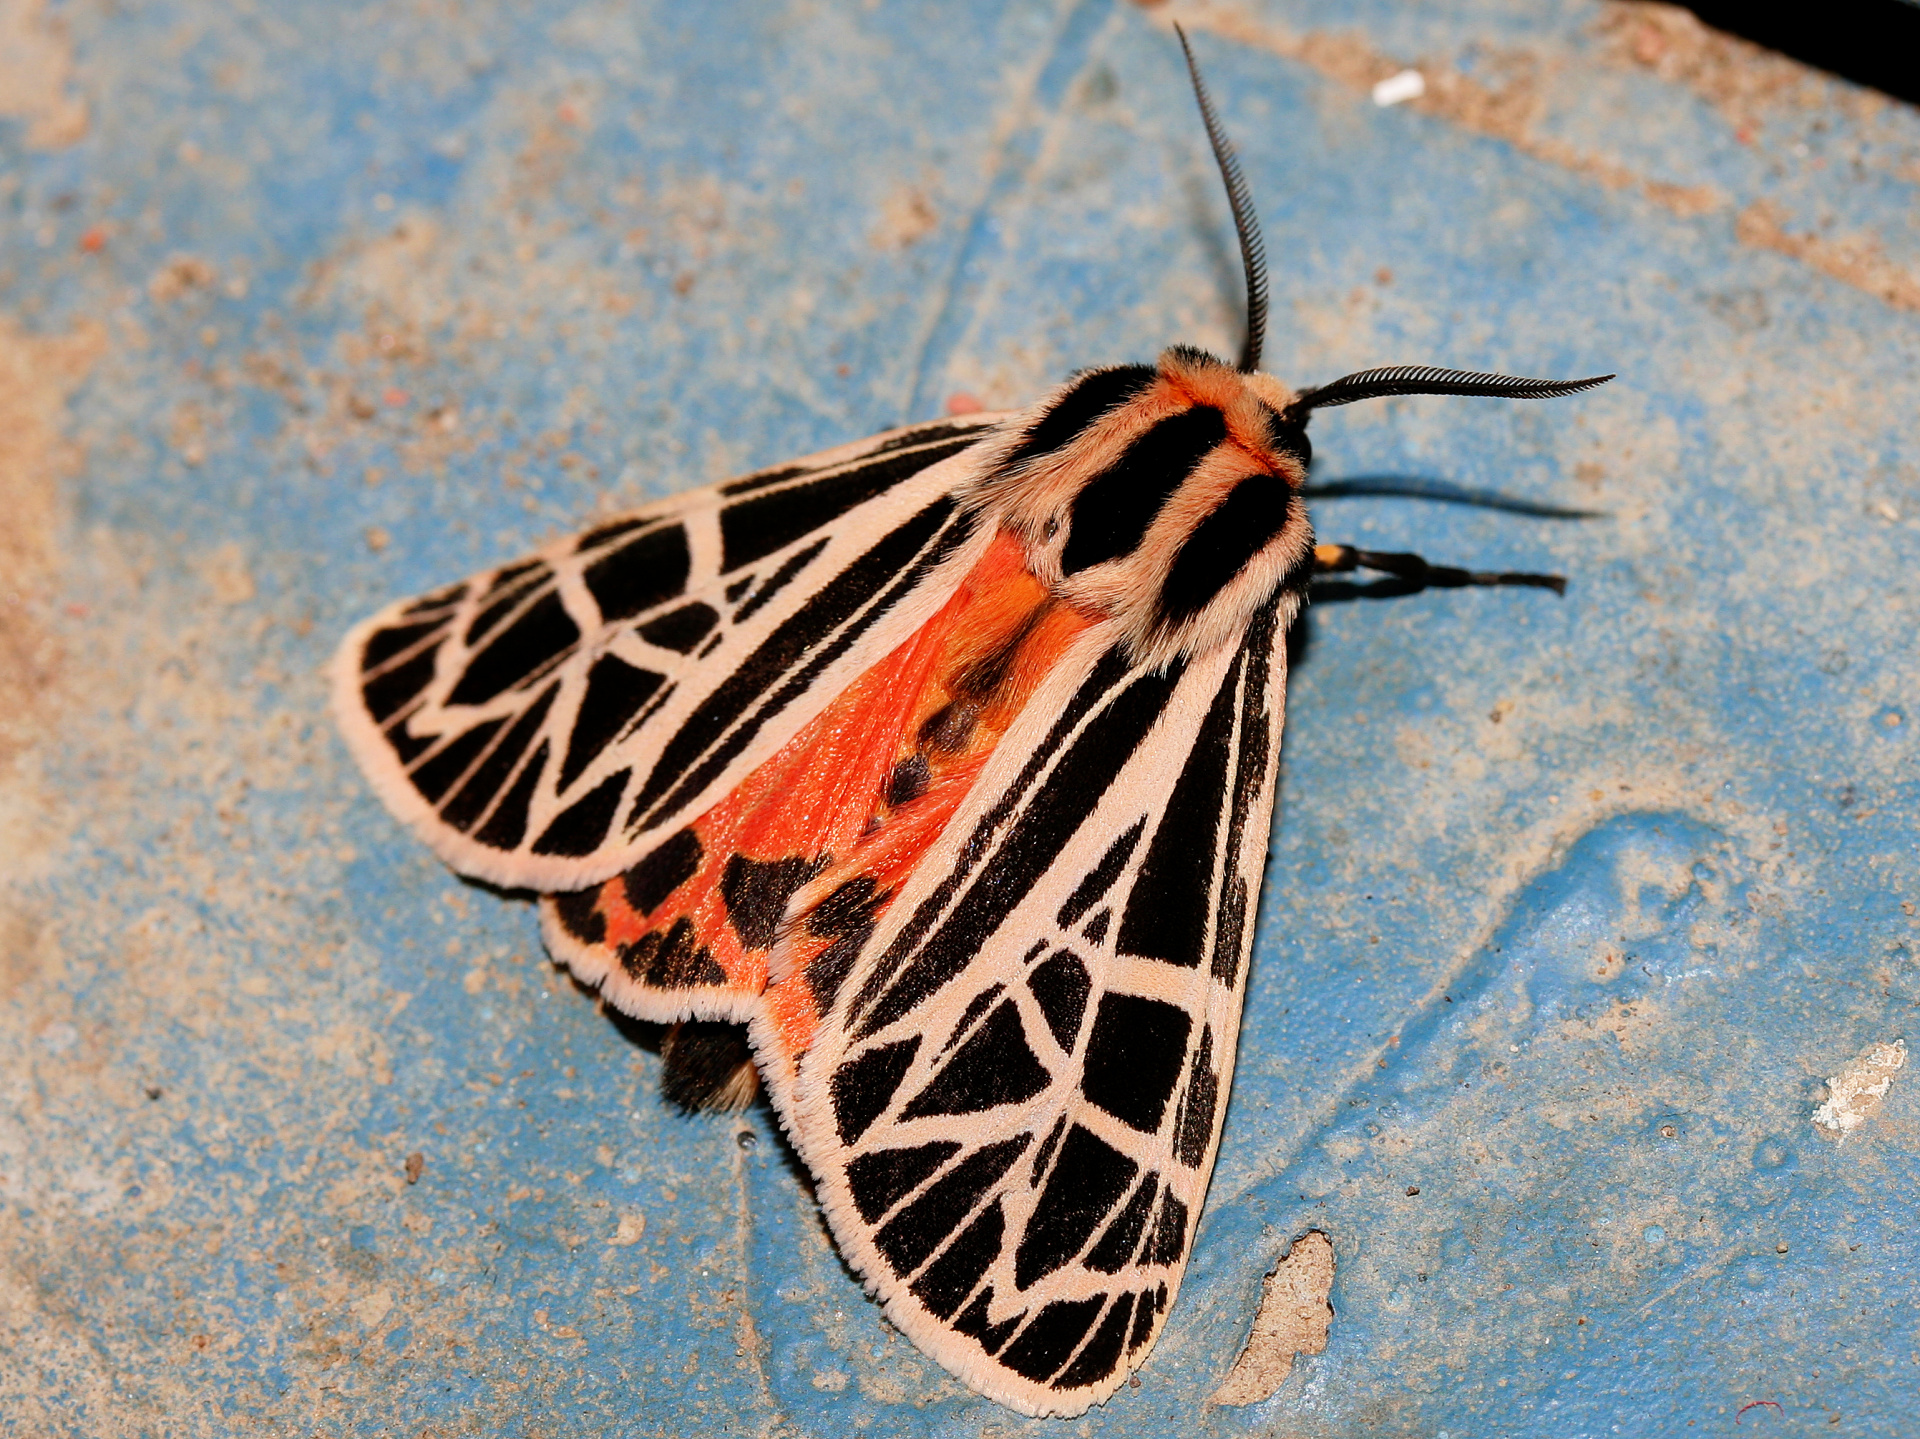 Grammia parthenice (Podróże » USA: Na ziemi Czejenów » Zwierzęta » Motyle i ćmy » Arctiidae)